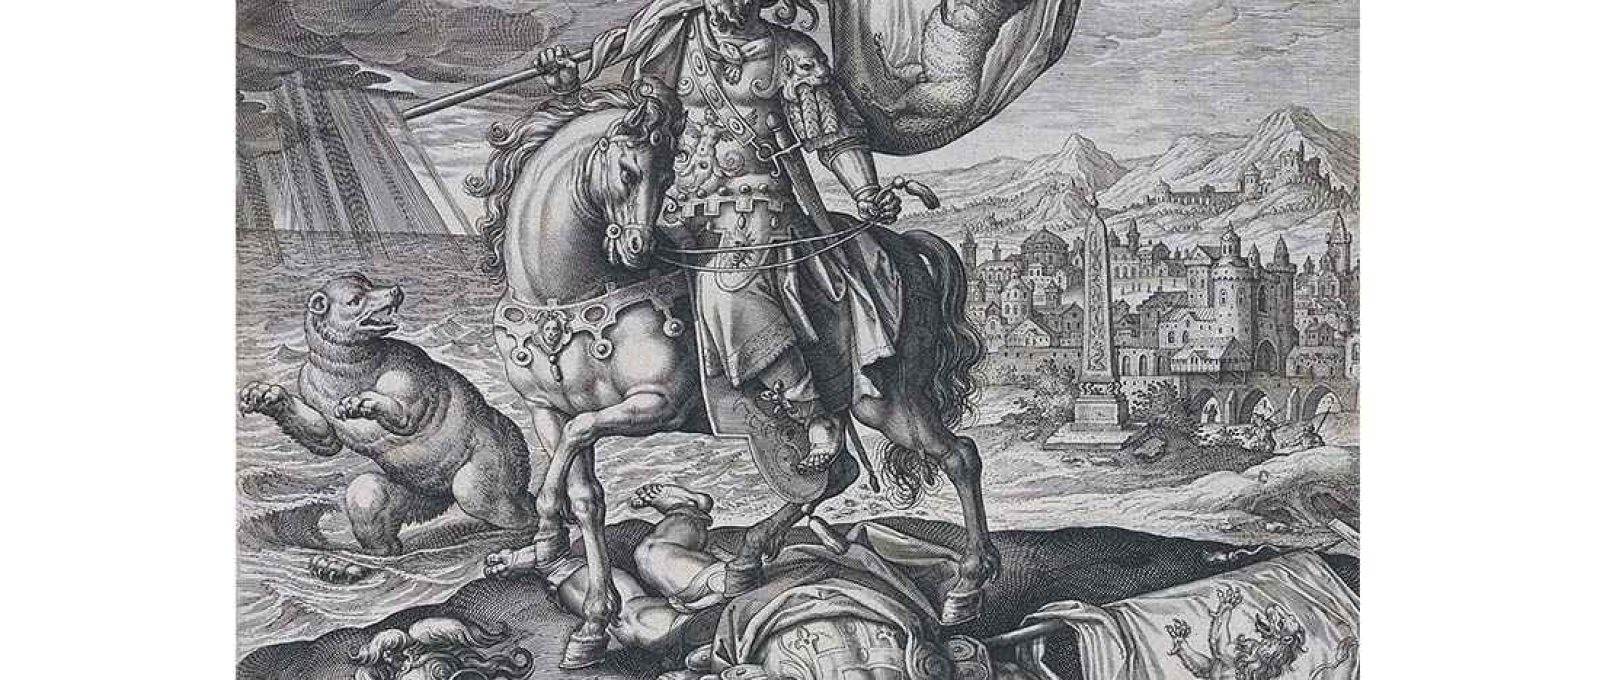 Ciro, Rei da Pérsia, de Quatro Ilustres Governantes da Antiguidade (The Elisha Whittelsey Collection, Metropolitan Museum of Art).